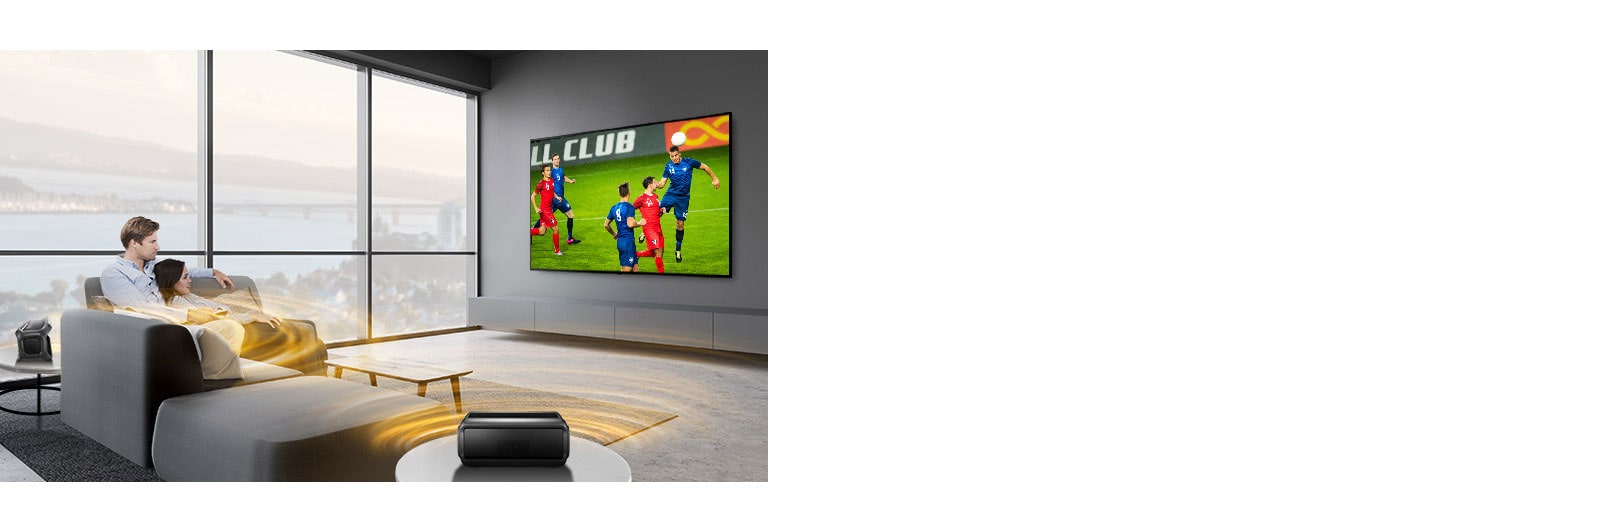 Moški in ženska gledata športno oddajo na televiziji v dnevni sobi z zadnjimi zvočniki Bluetooth